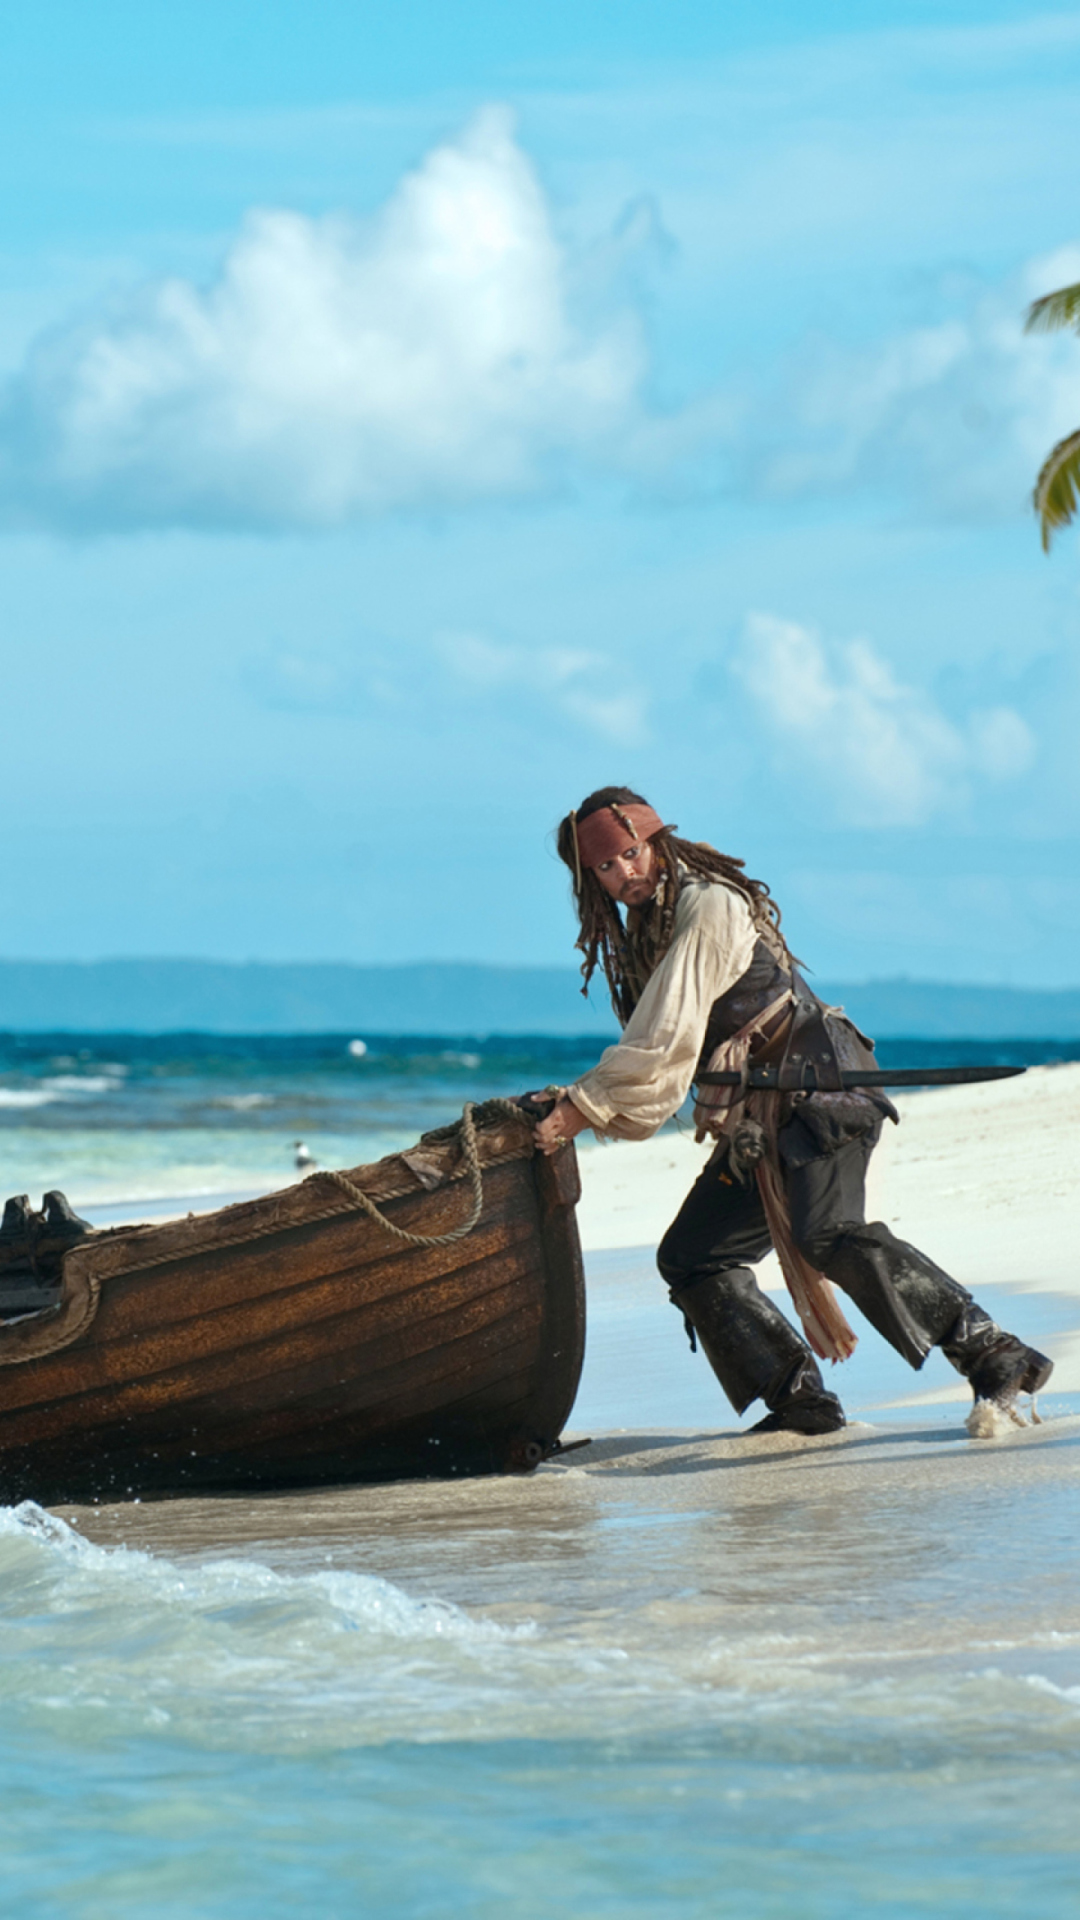 пираты карибского моря джек воробей море природа остров песок лодка вода скачать